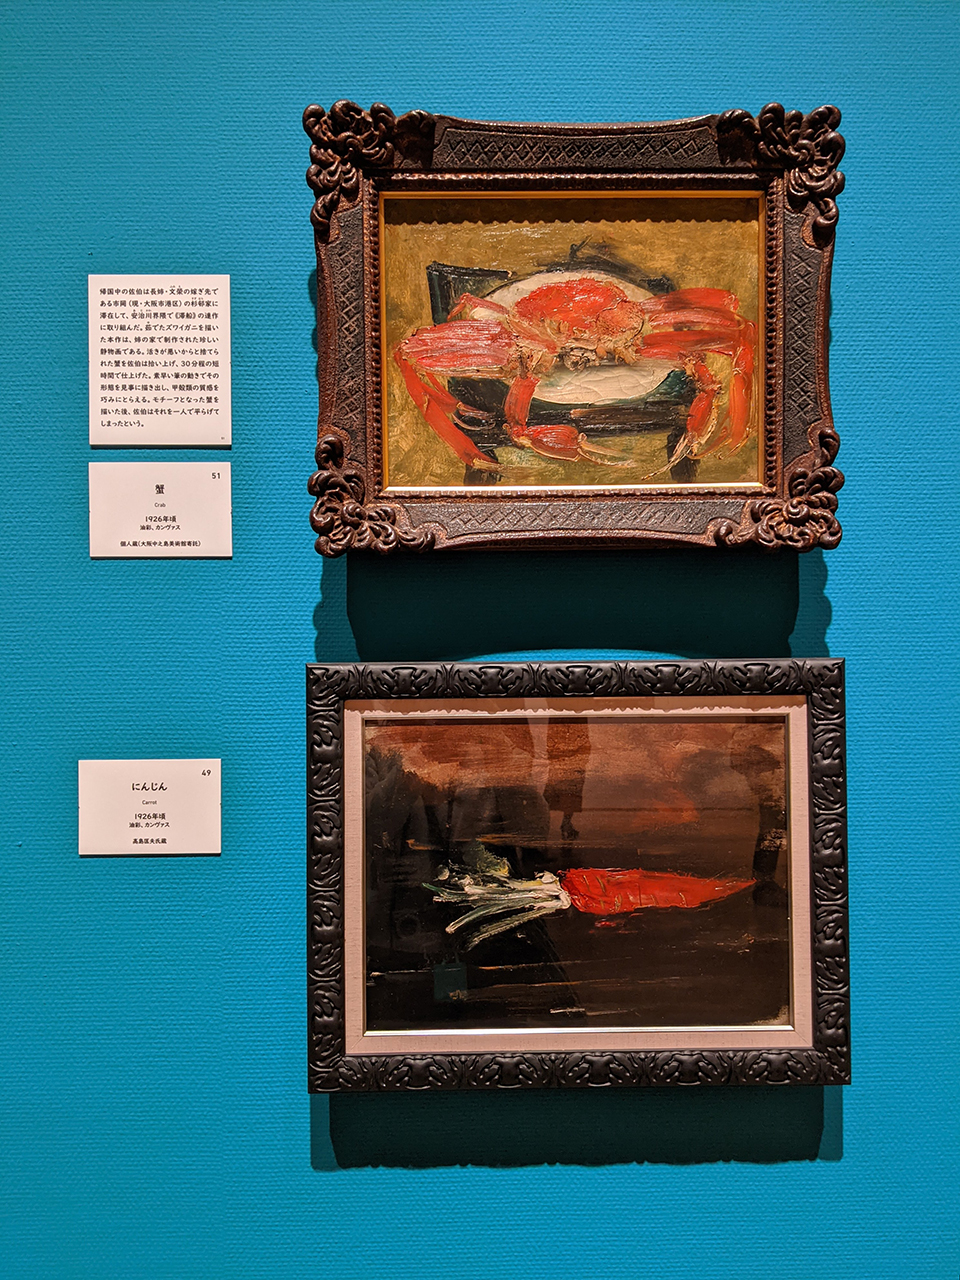 上から《蟹》個人蔵（大阪中之島美術館寄託）、《にんじん》高島匡夫氏蔵　1926年頃